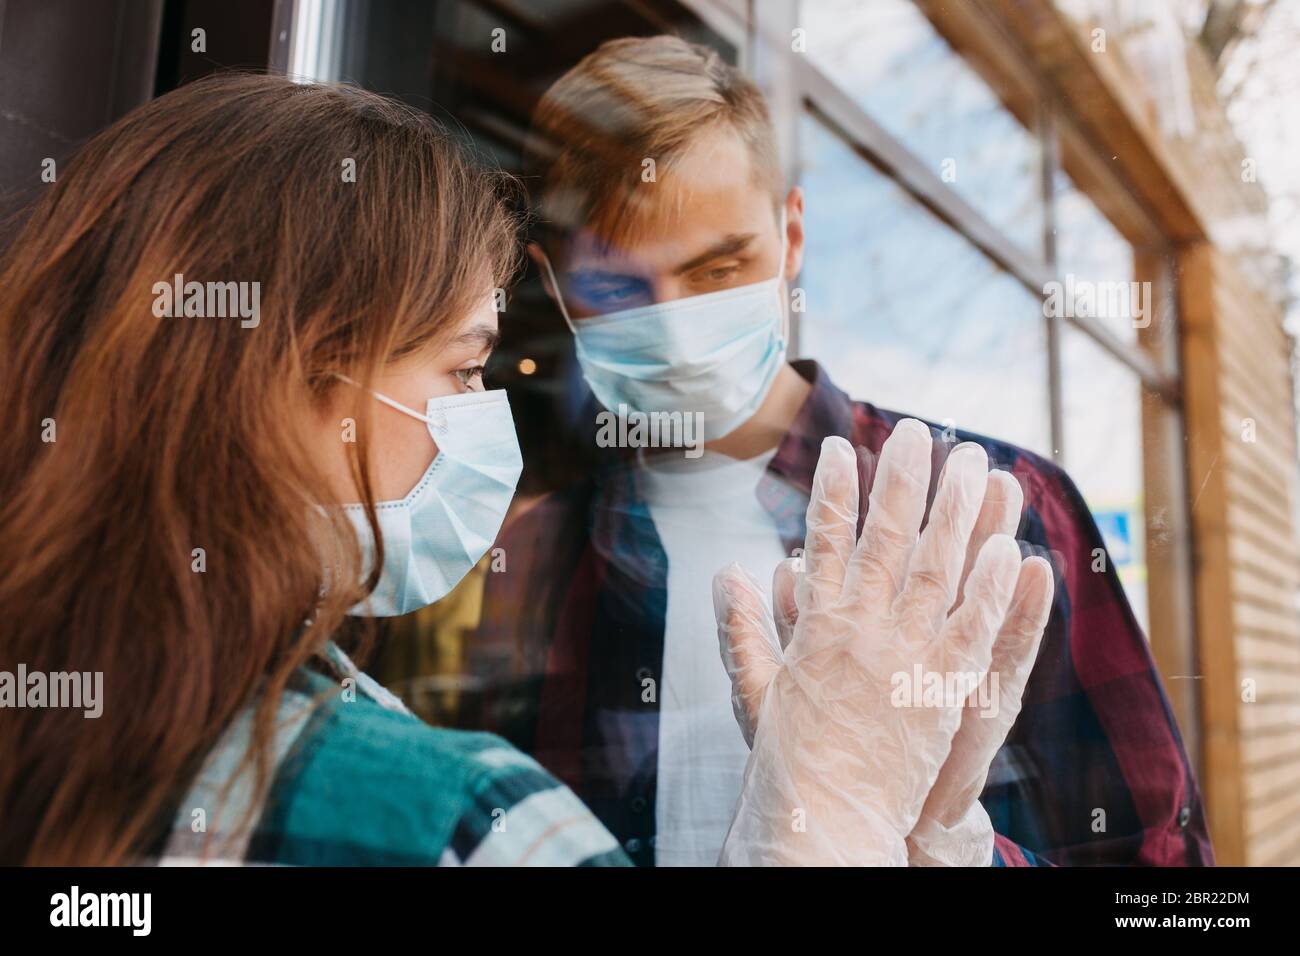 Couple isolement maison quarantaine automatique porter masque de protection pour la propagation du virus de la maladie Banque D'Images